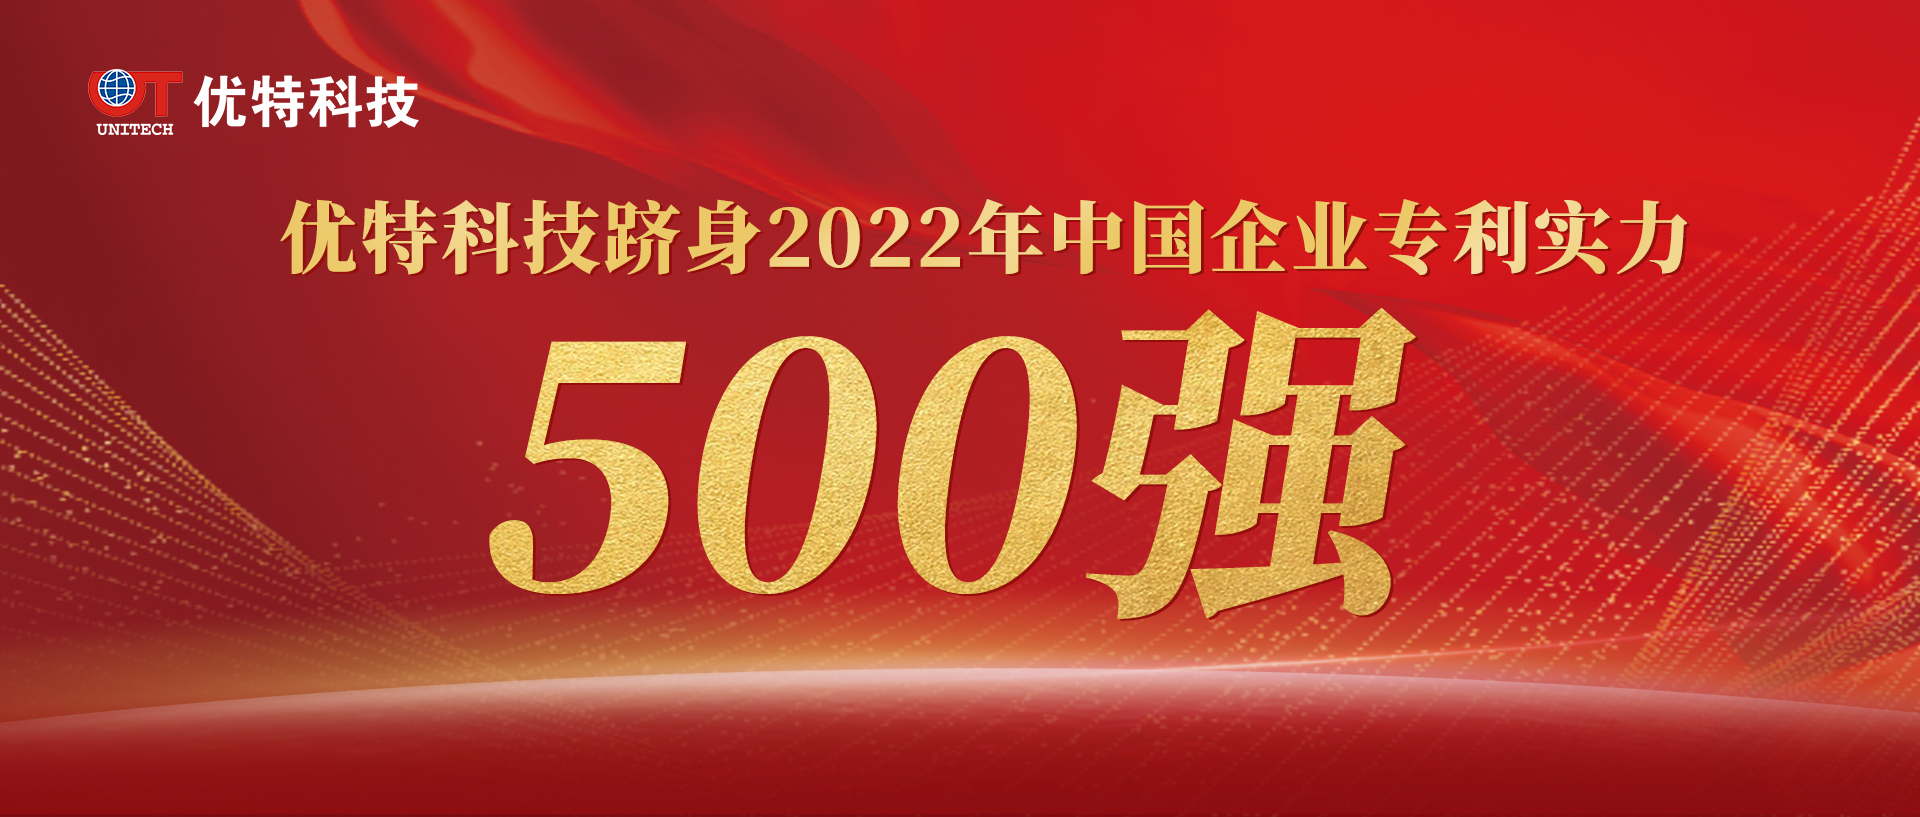 771771威尼斯.Cm上榜“中国企业专利实力500强”